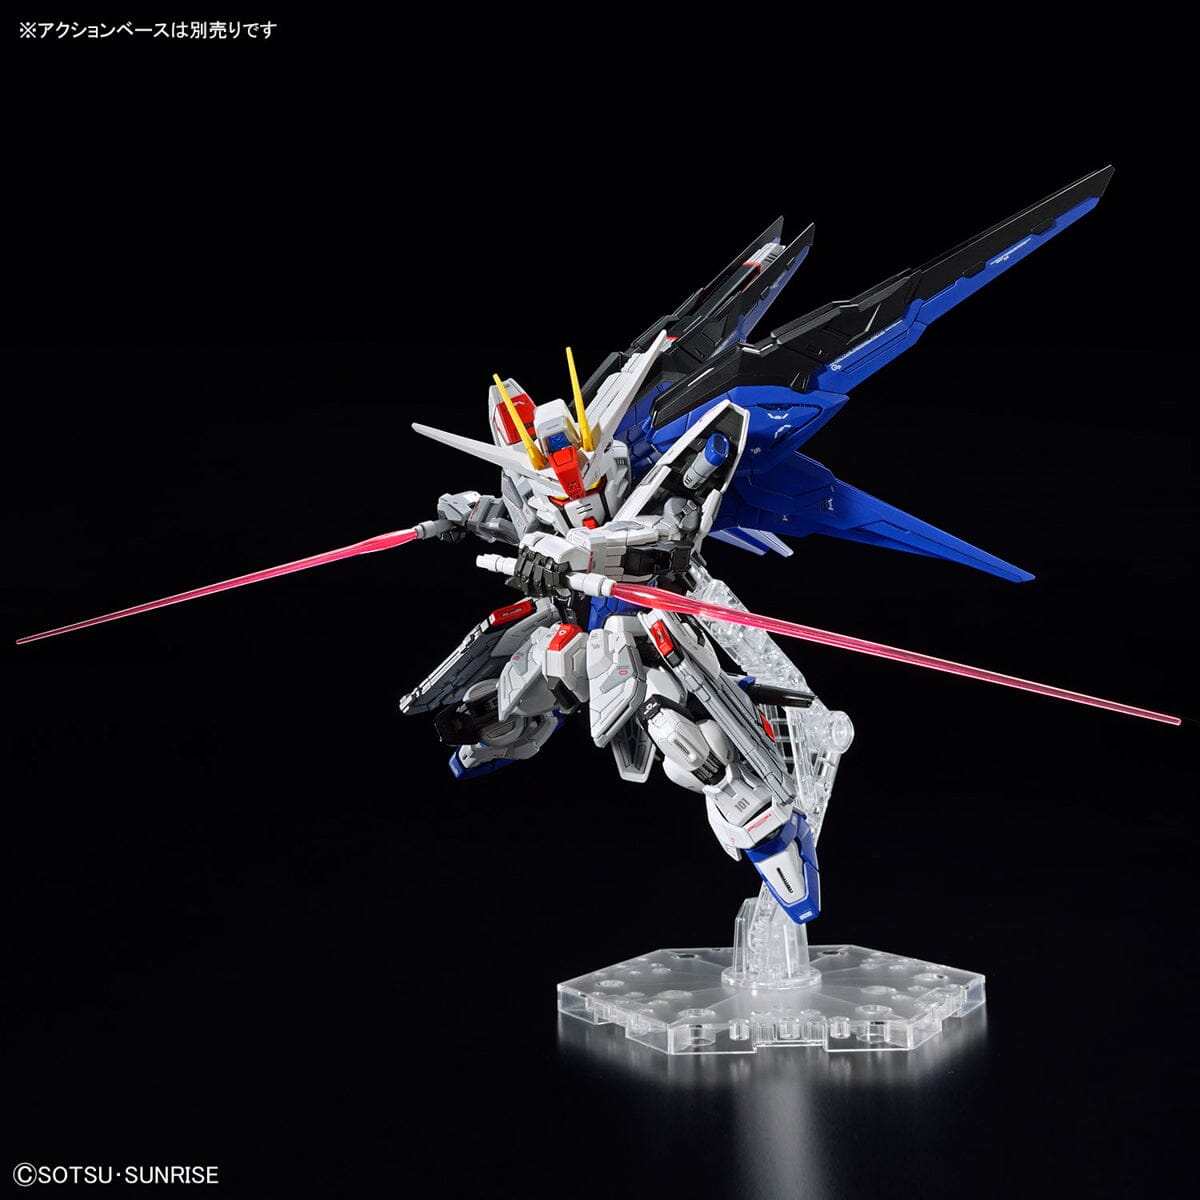 MGSD Freedom Gundam – USA Gundam Store